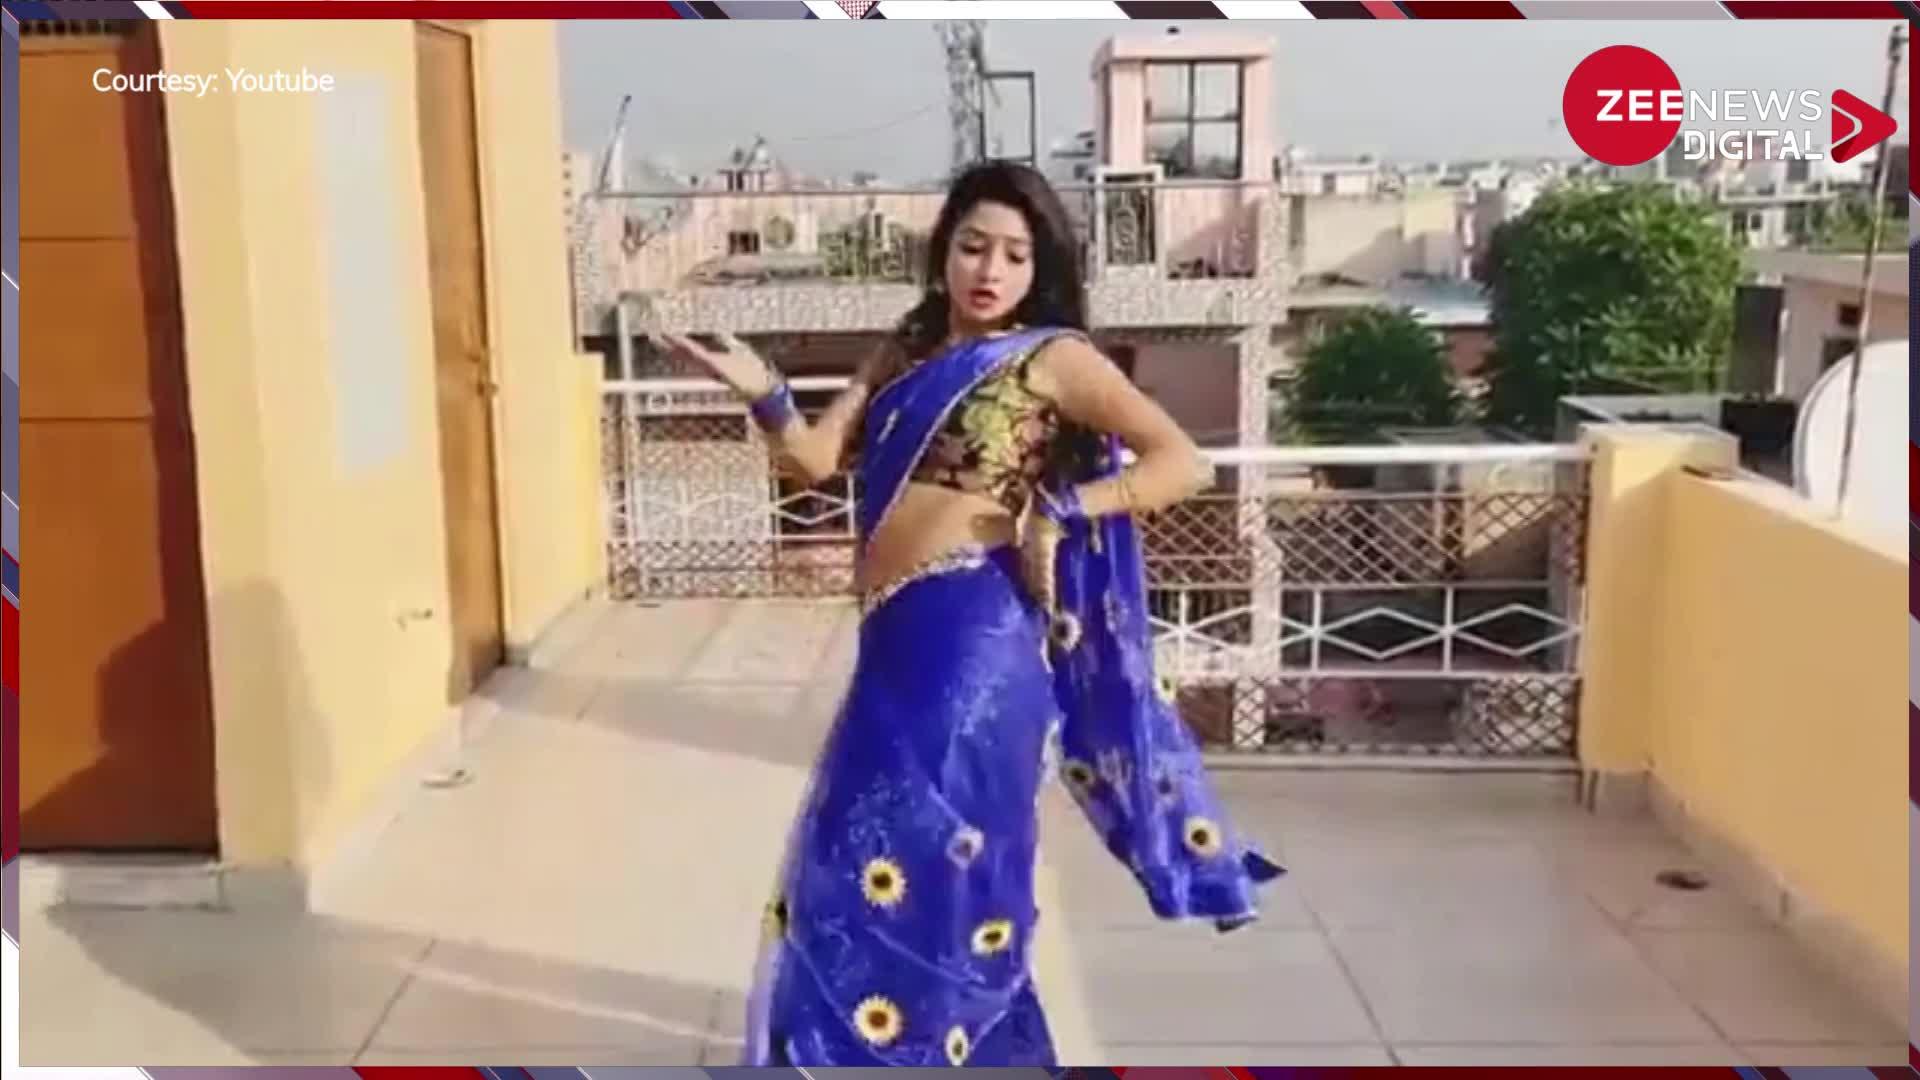 Deshi Bhabhi Dance: सेक्सी साड़ी पहन, छत पर खड़े होकर... देसी भाभी ने Sapna Choudhary के गाने पर दिखाया हॉट डांस, ठुमके देख उछल पड़े लोग